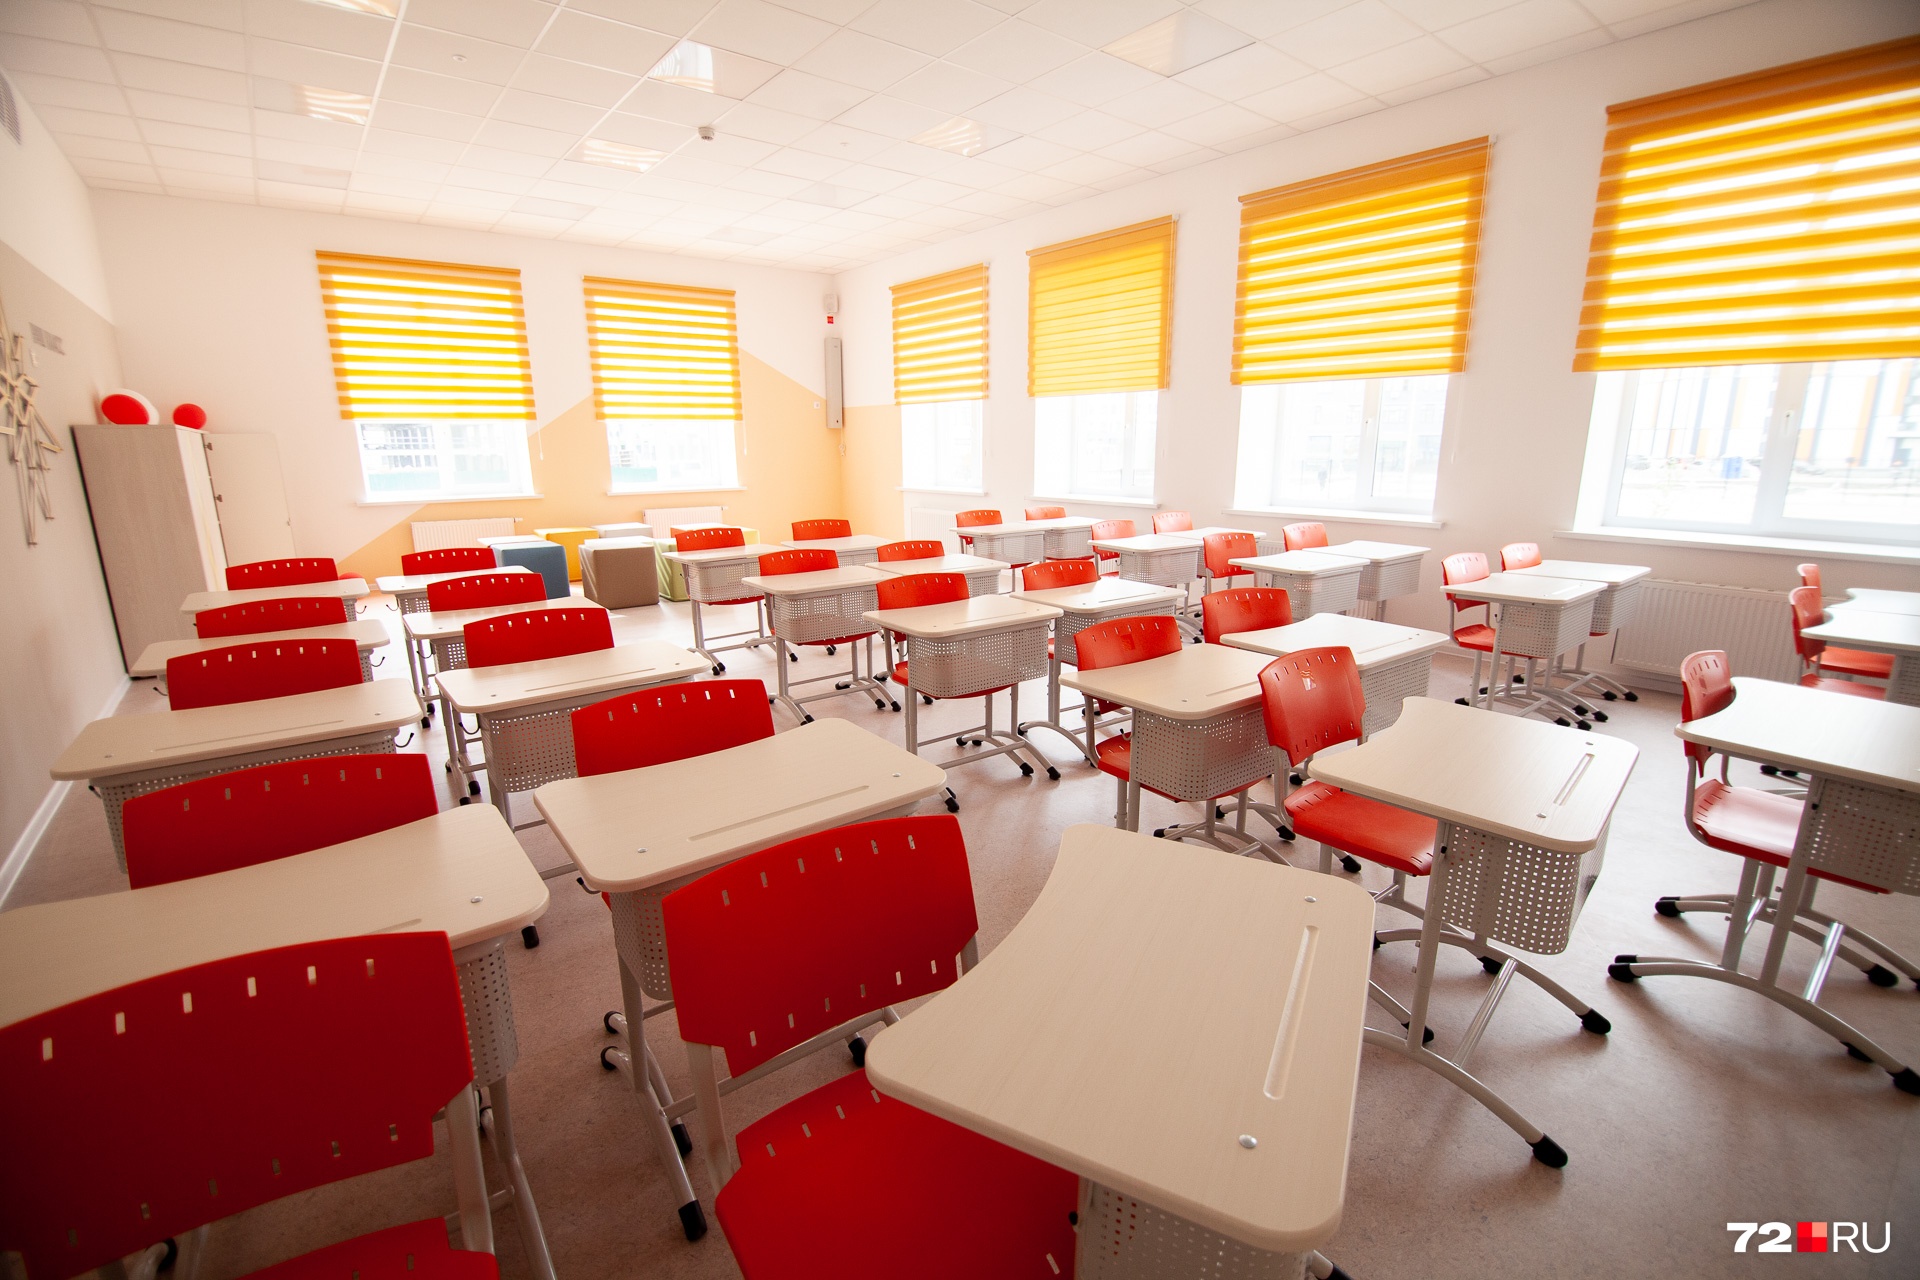 А это один из учебных кабинетов. В каждом — одноместные парты и стулья под цвет стен. Зеленые стены — зеленые стулья, желтые стены — верно, желтые стулья и так далее